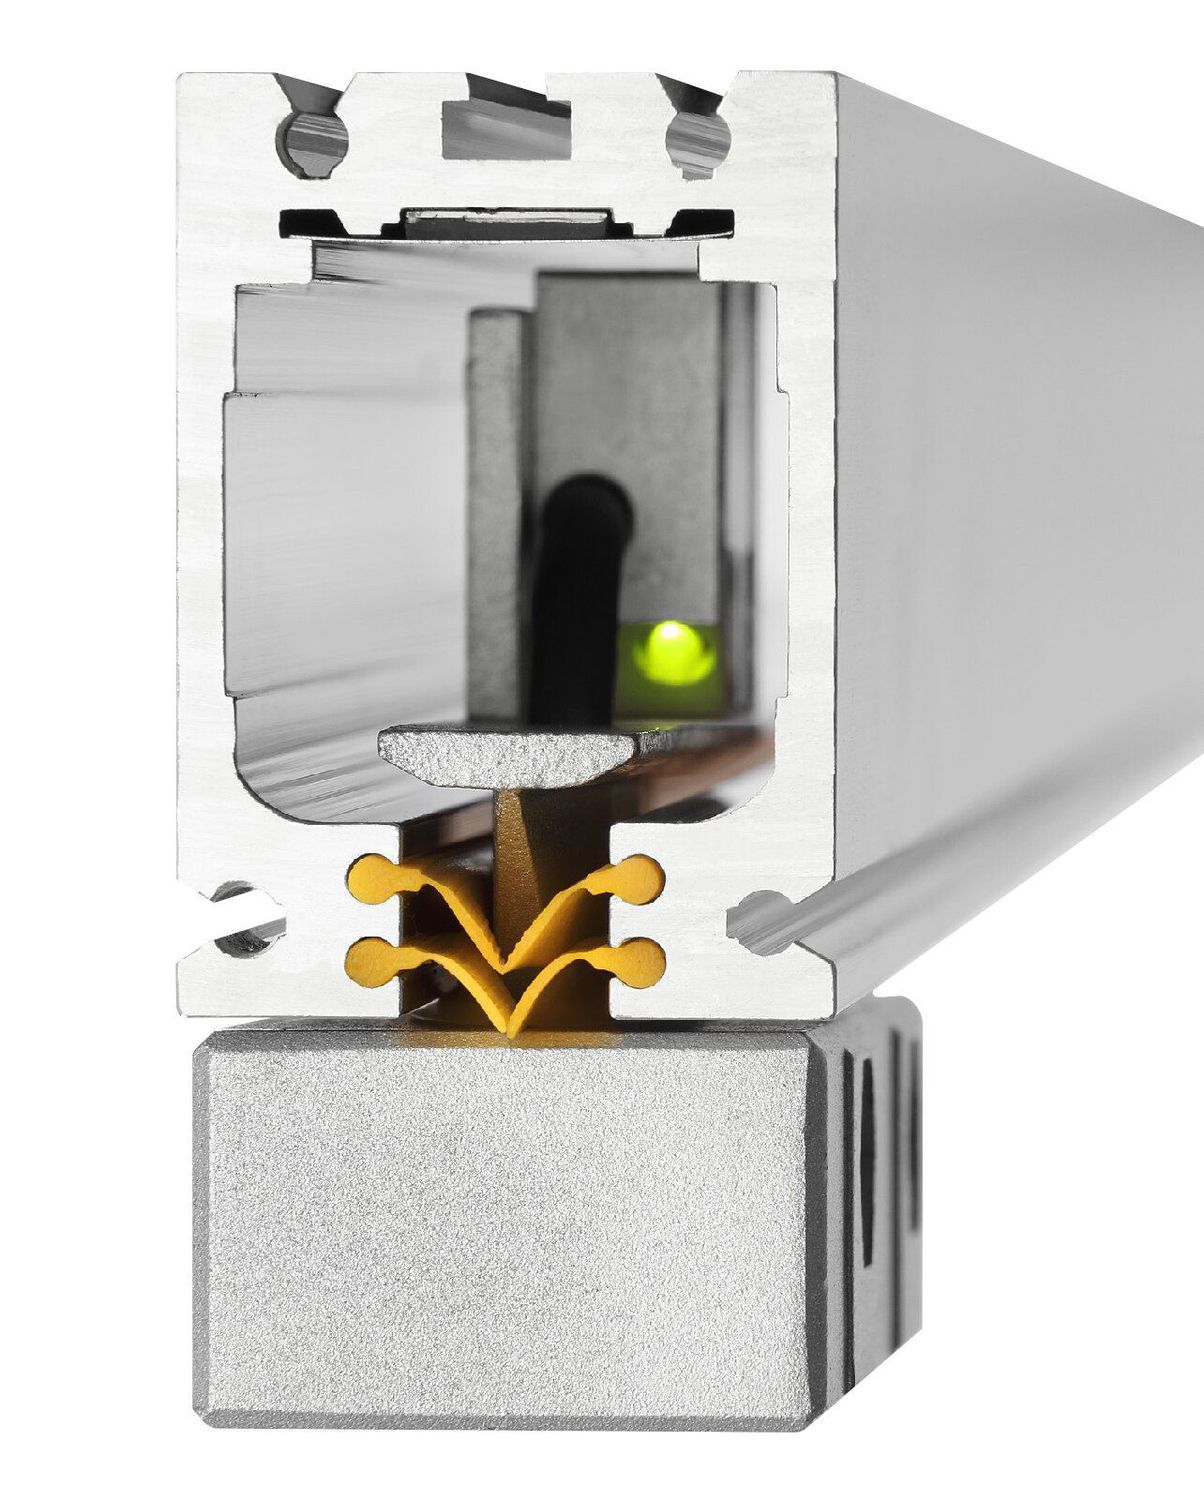 K+C Magnetmaßstab MSX 150 mm - 5 µm | Verfahrweg 160 mm